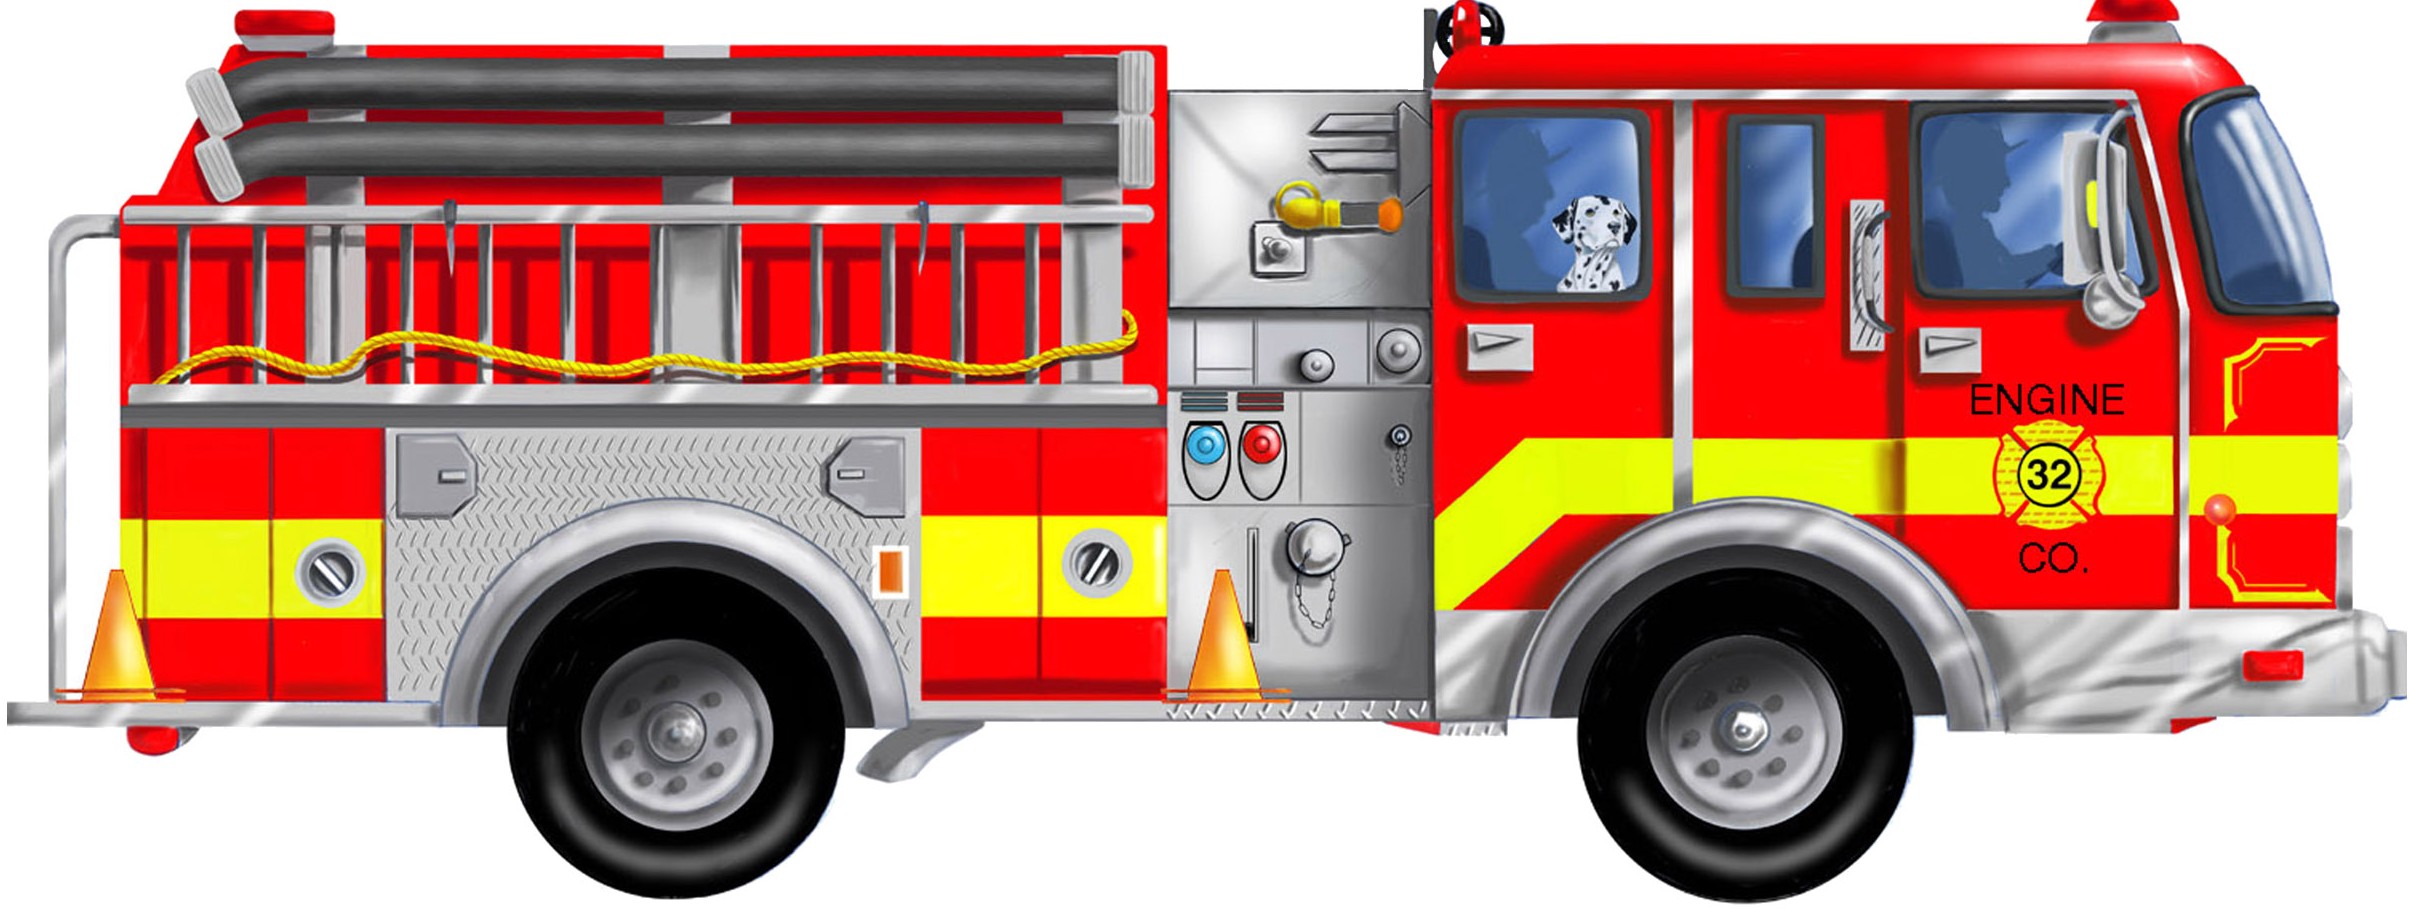 Fire truck fire engine clipart image cartoon firetruck creating 5 